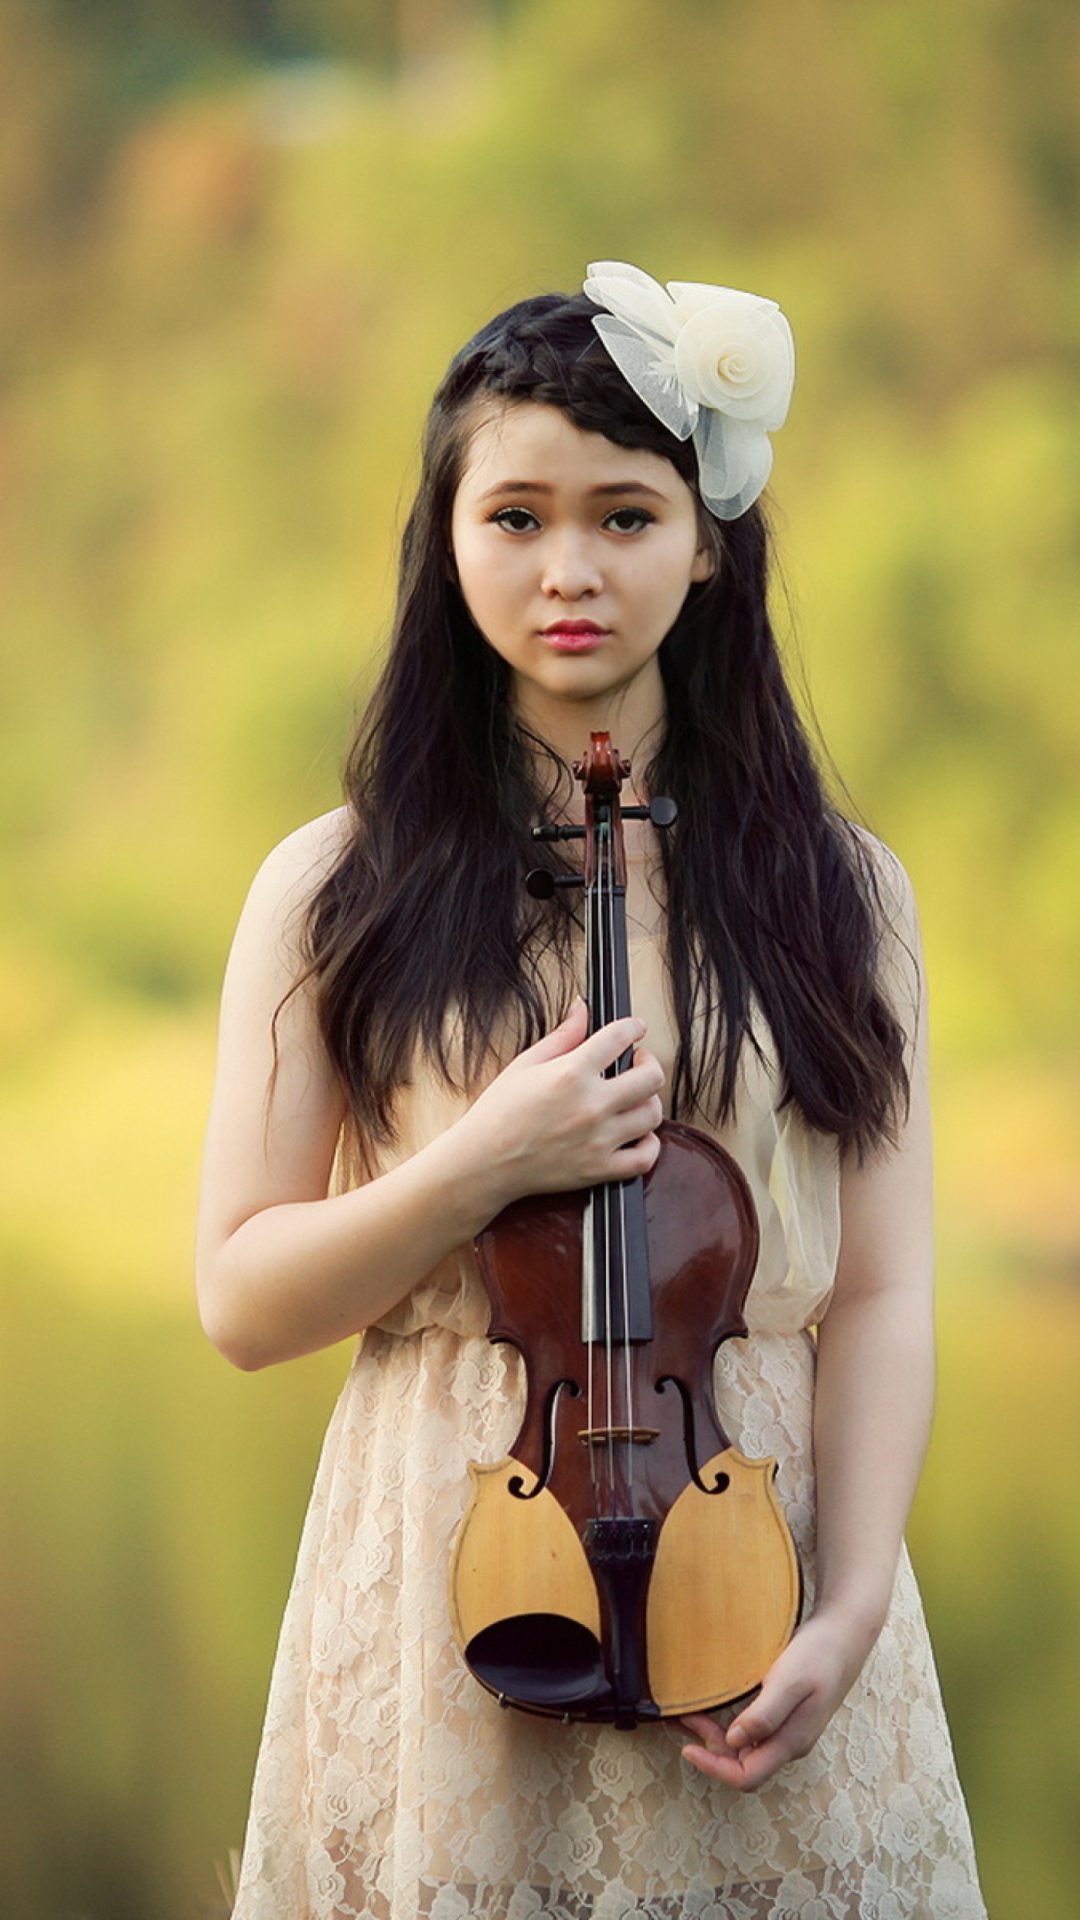 Обои Girl With Violin 1080x1920